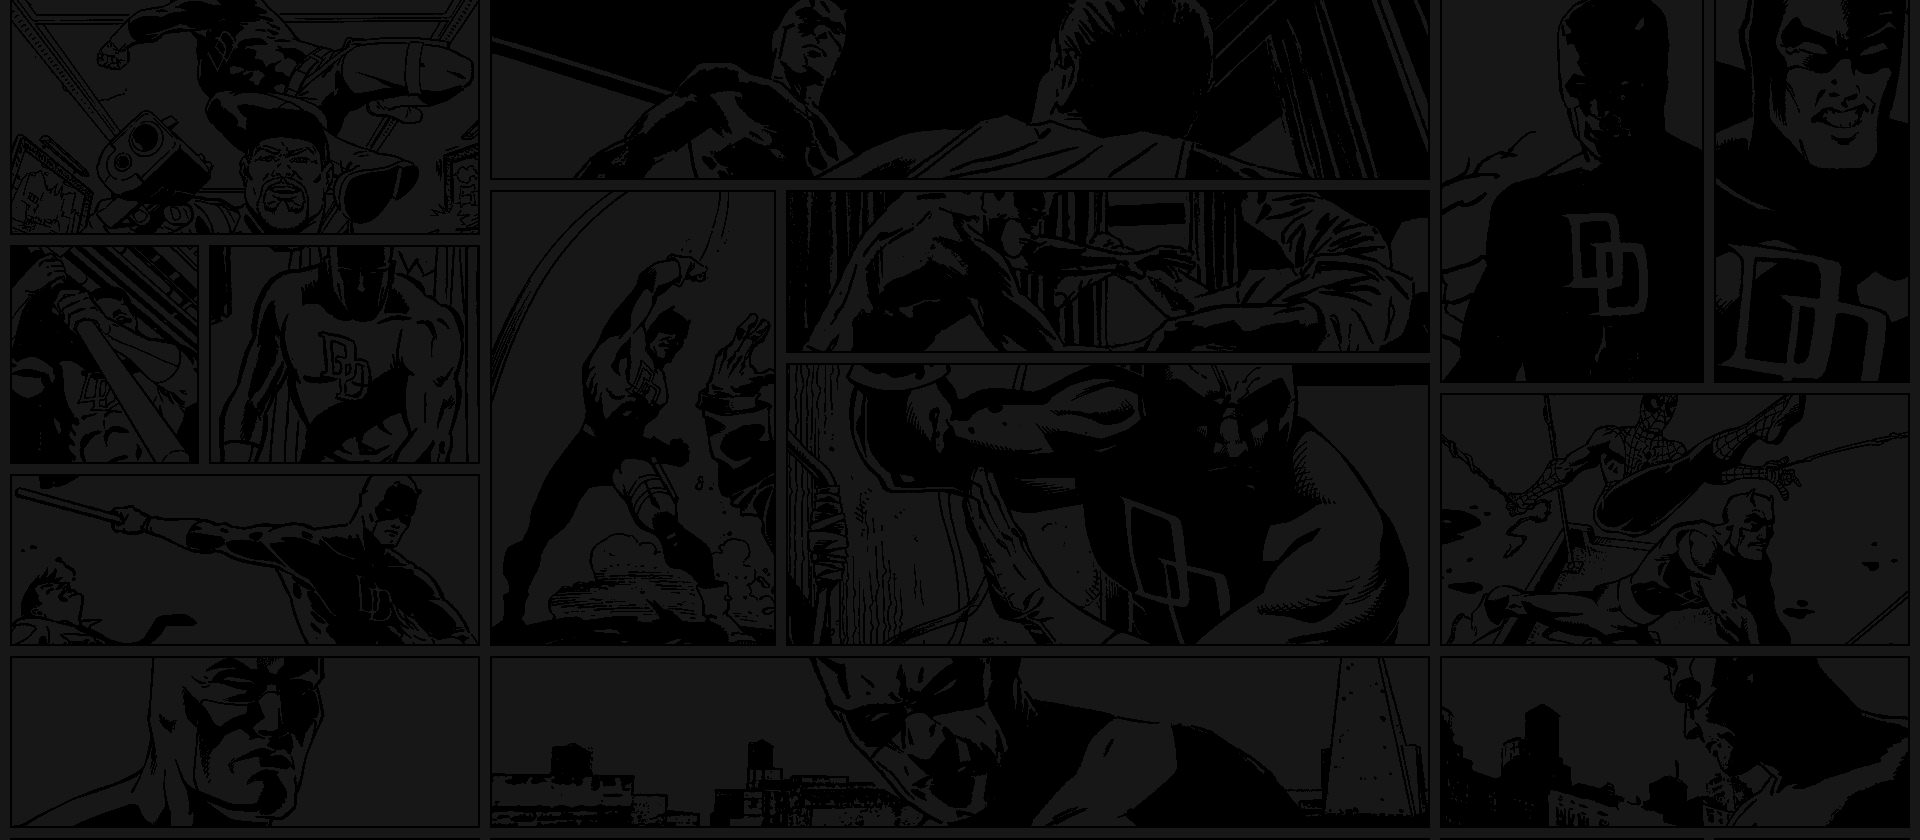 Daredevil comic panels